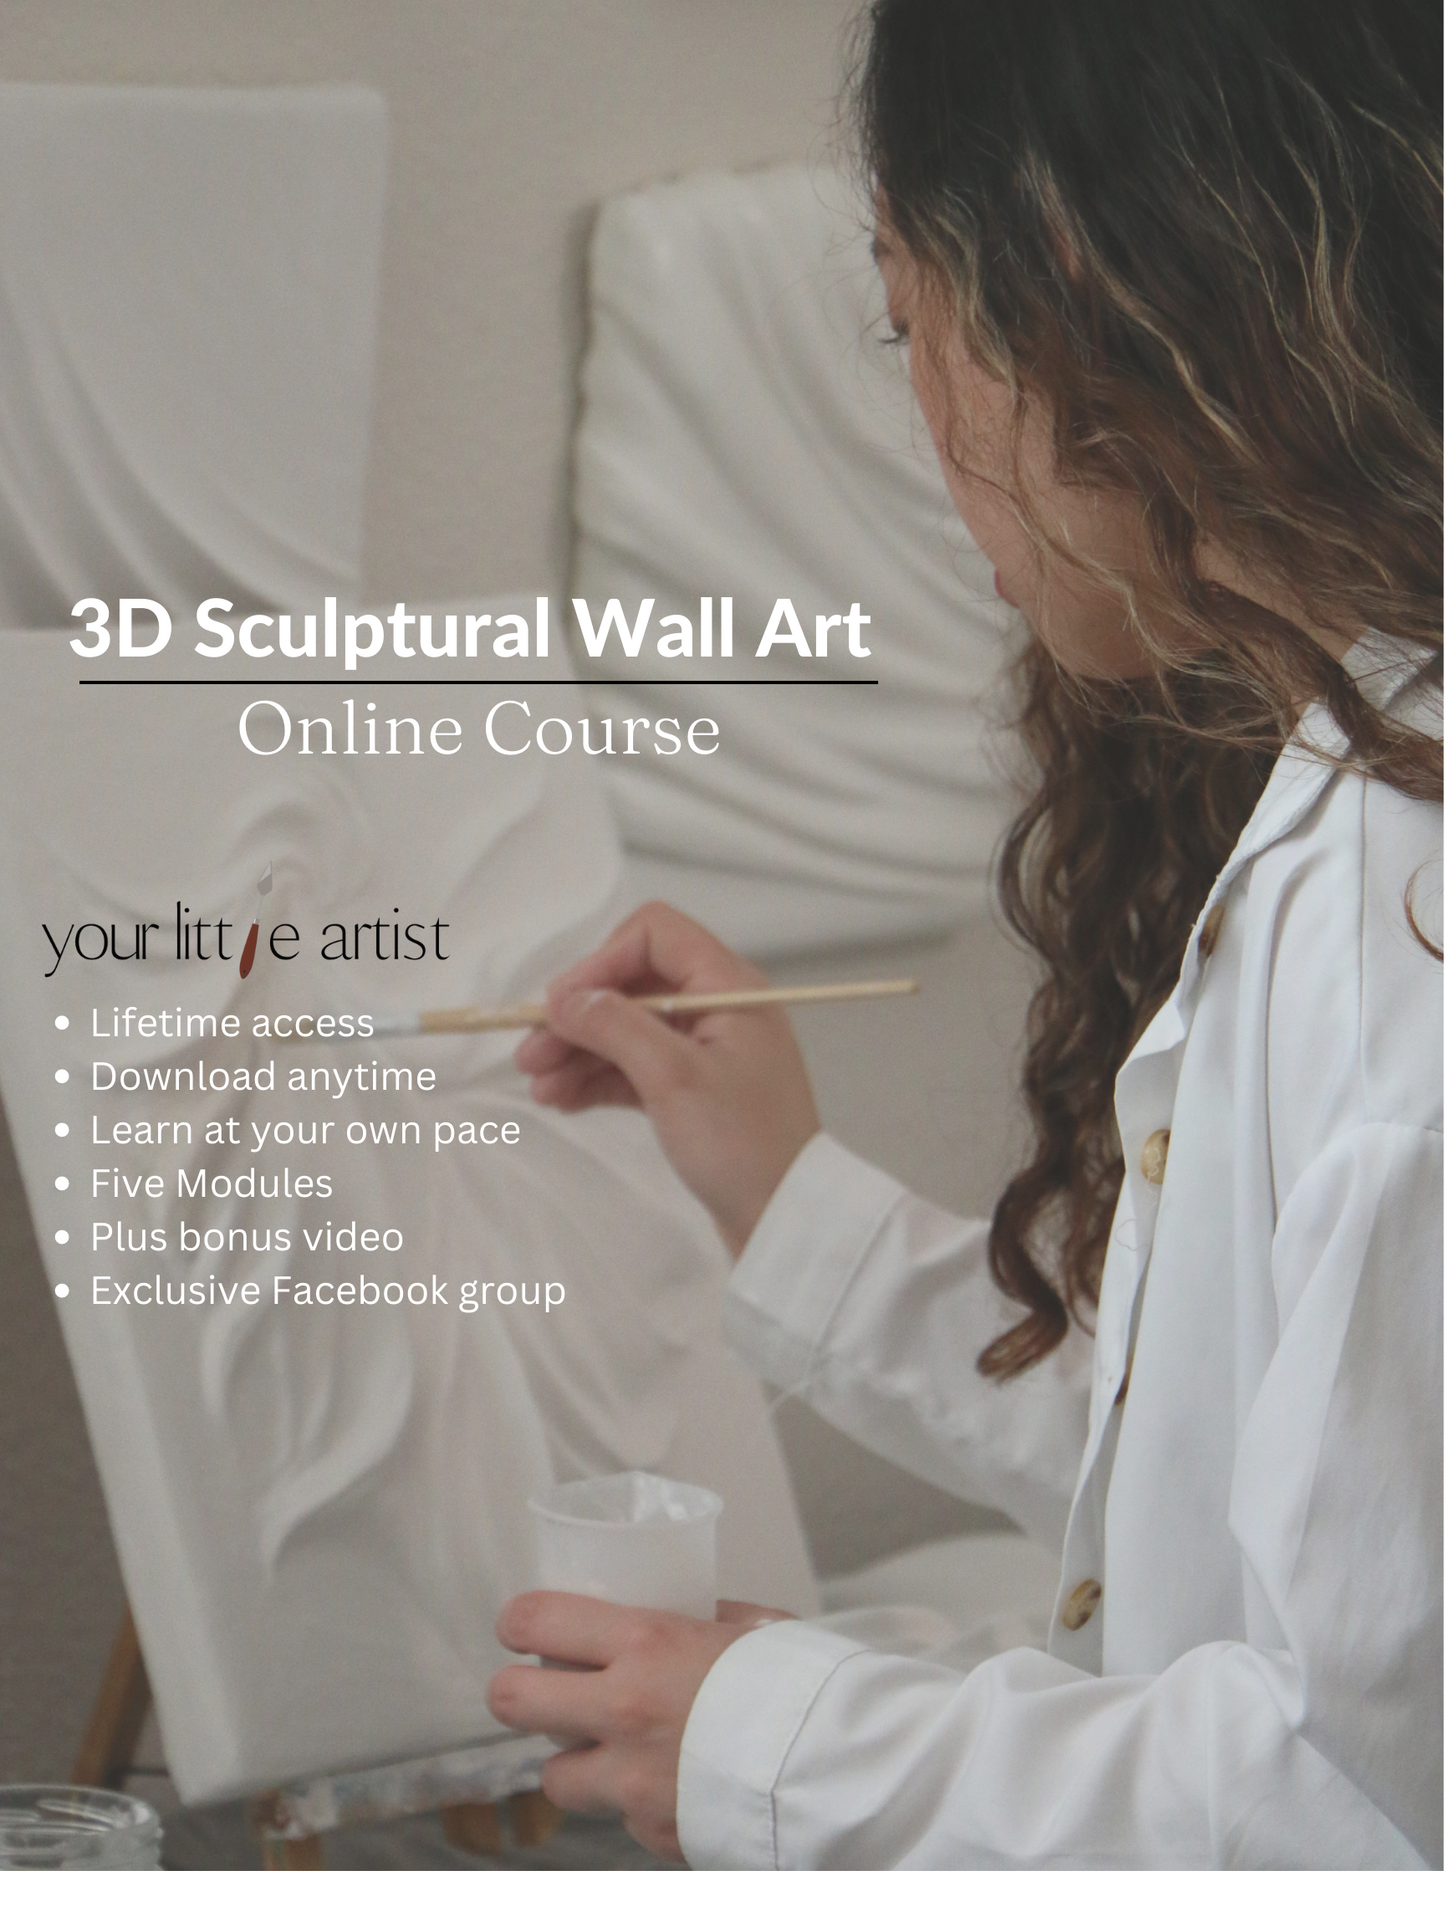 3D Art / Course Description